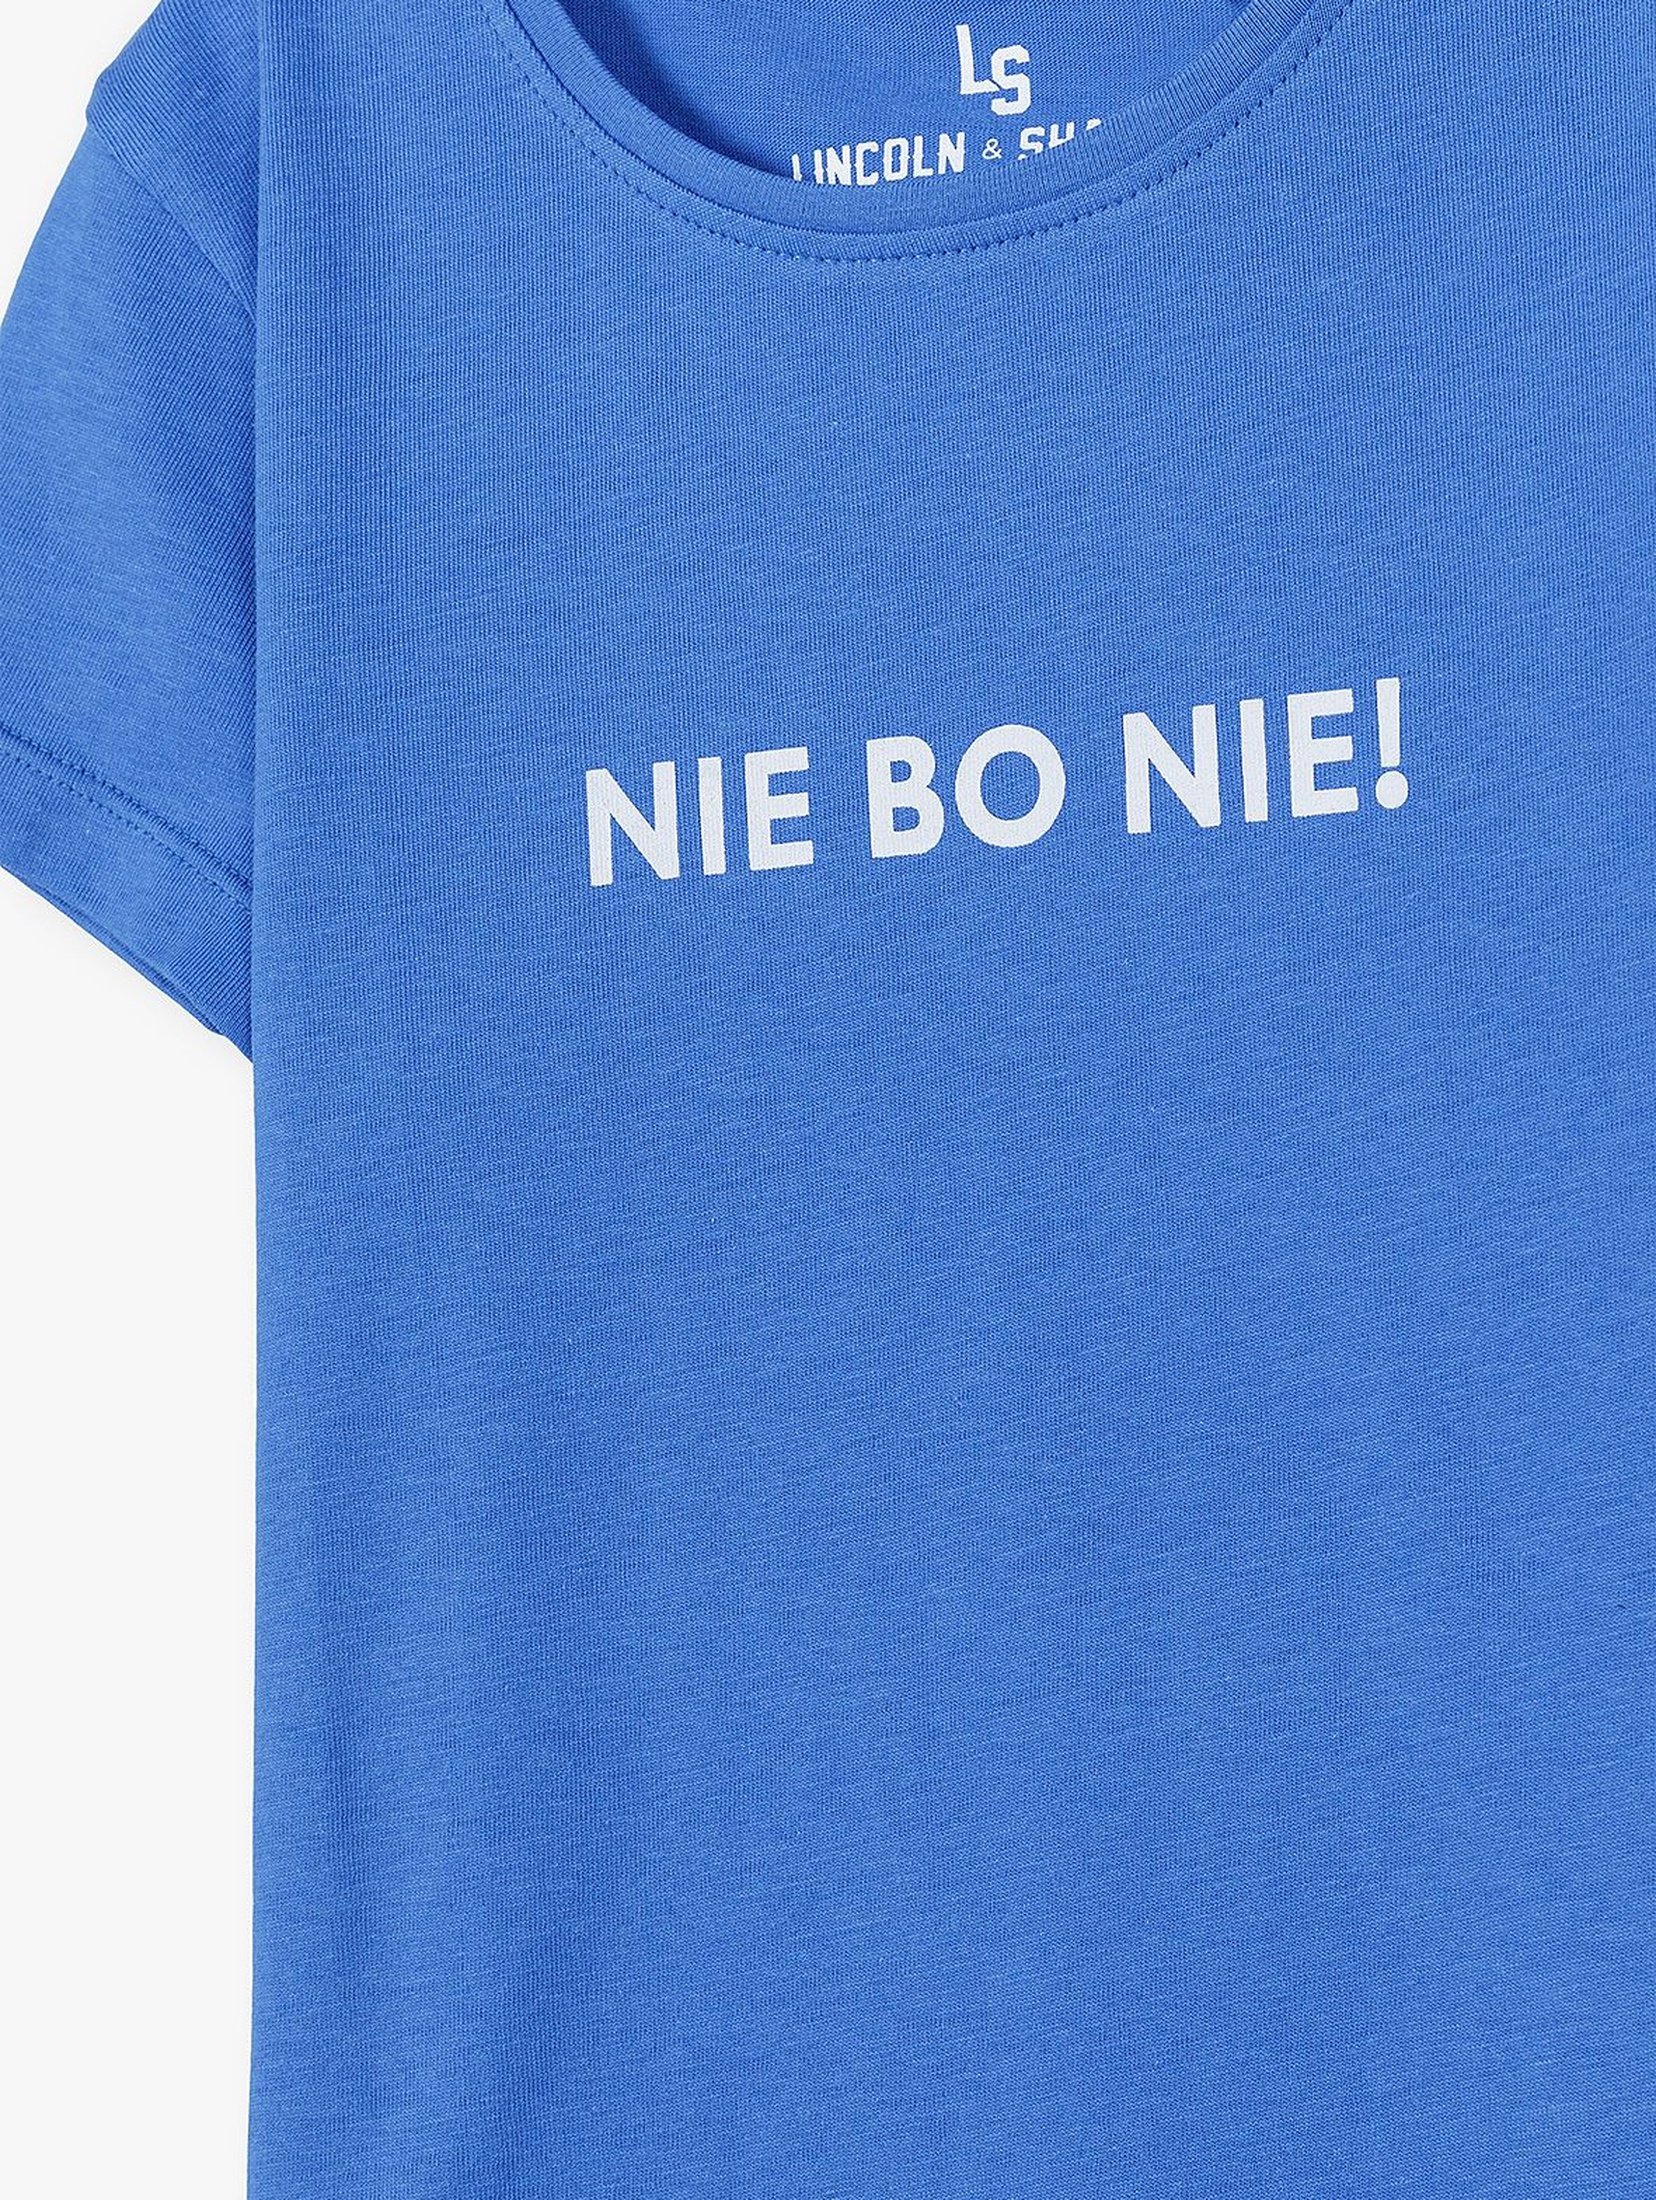 Bawełniany t-shirt dziewczęcy z napisem Nie Bo Nie